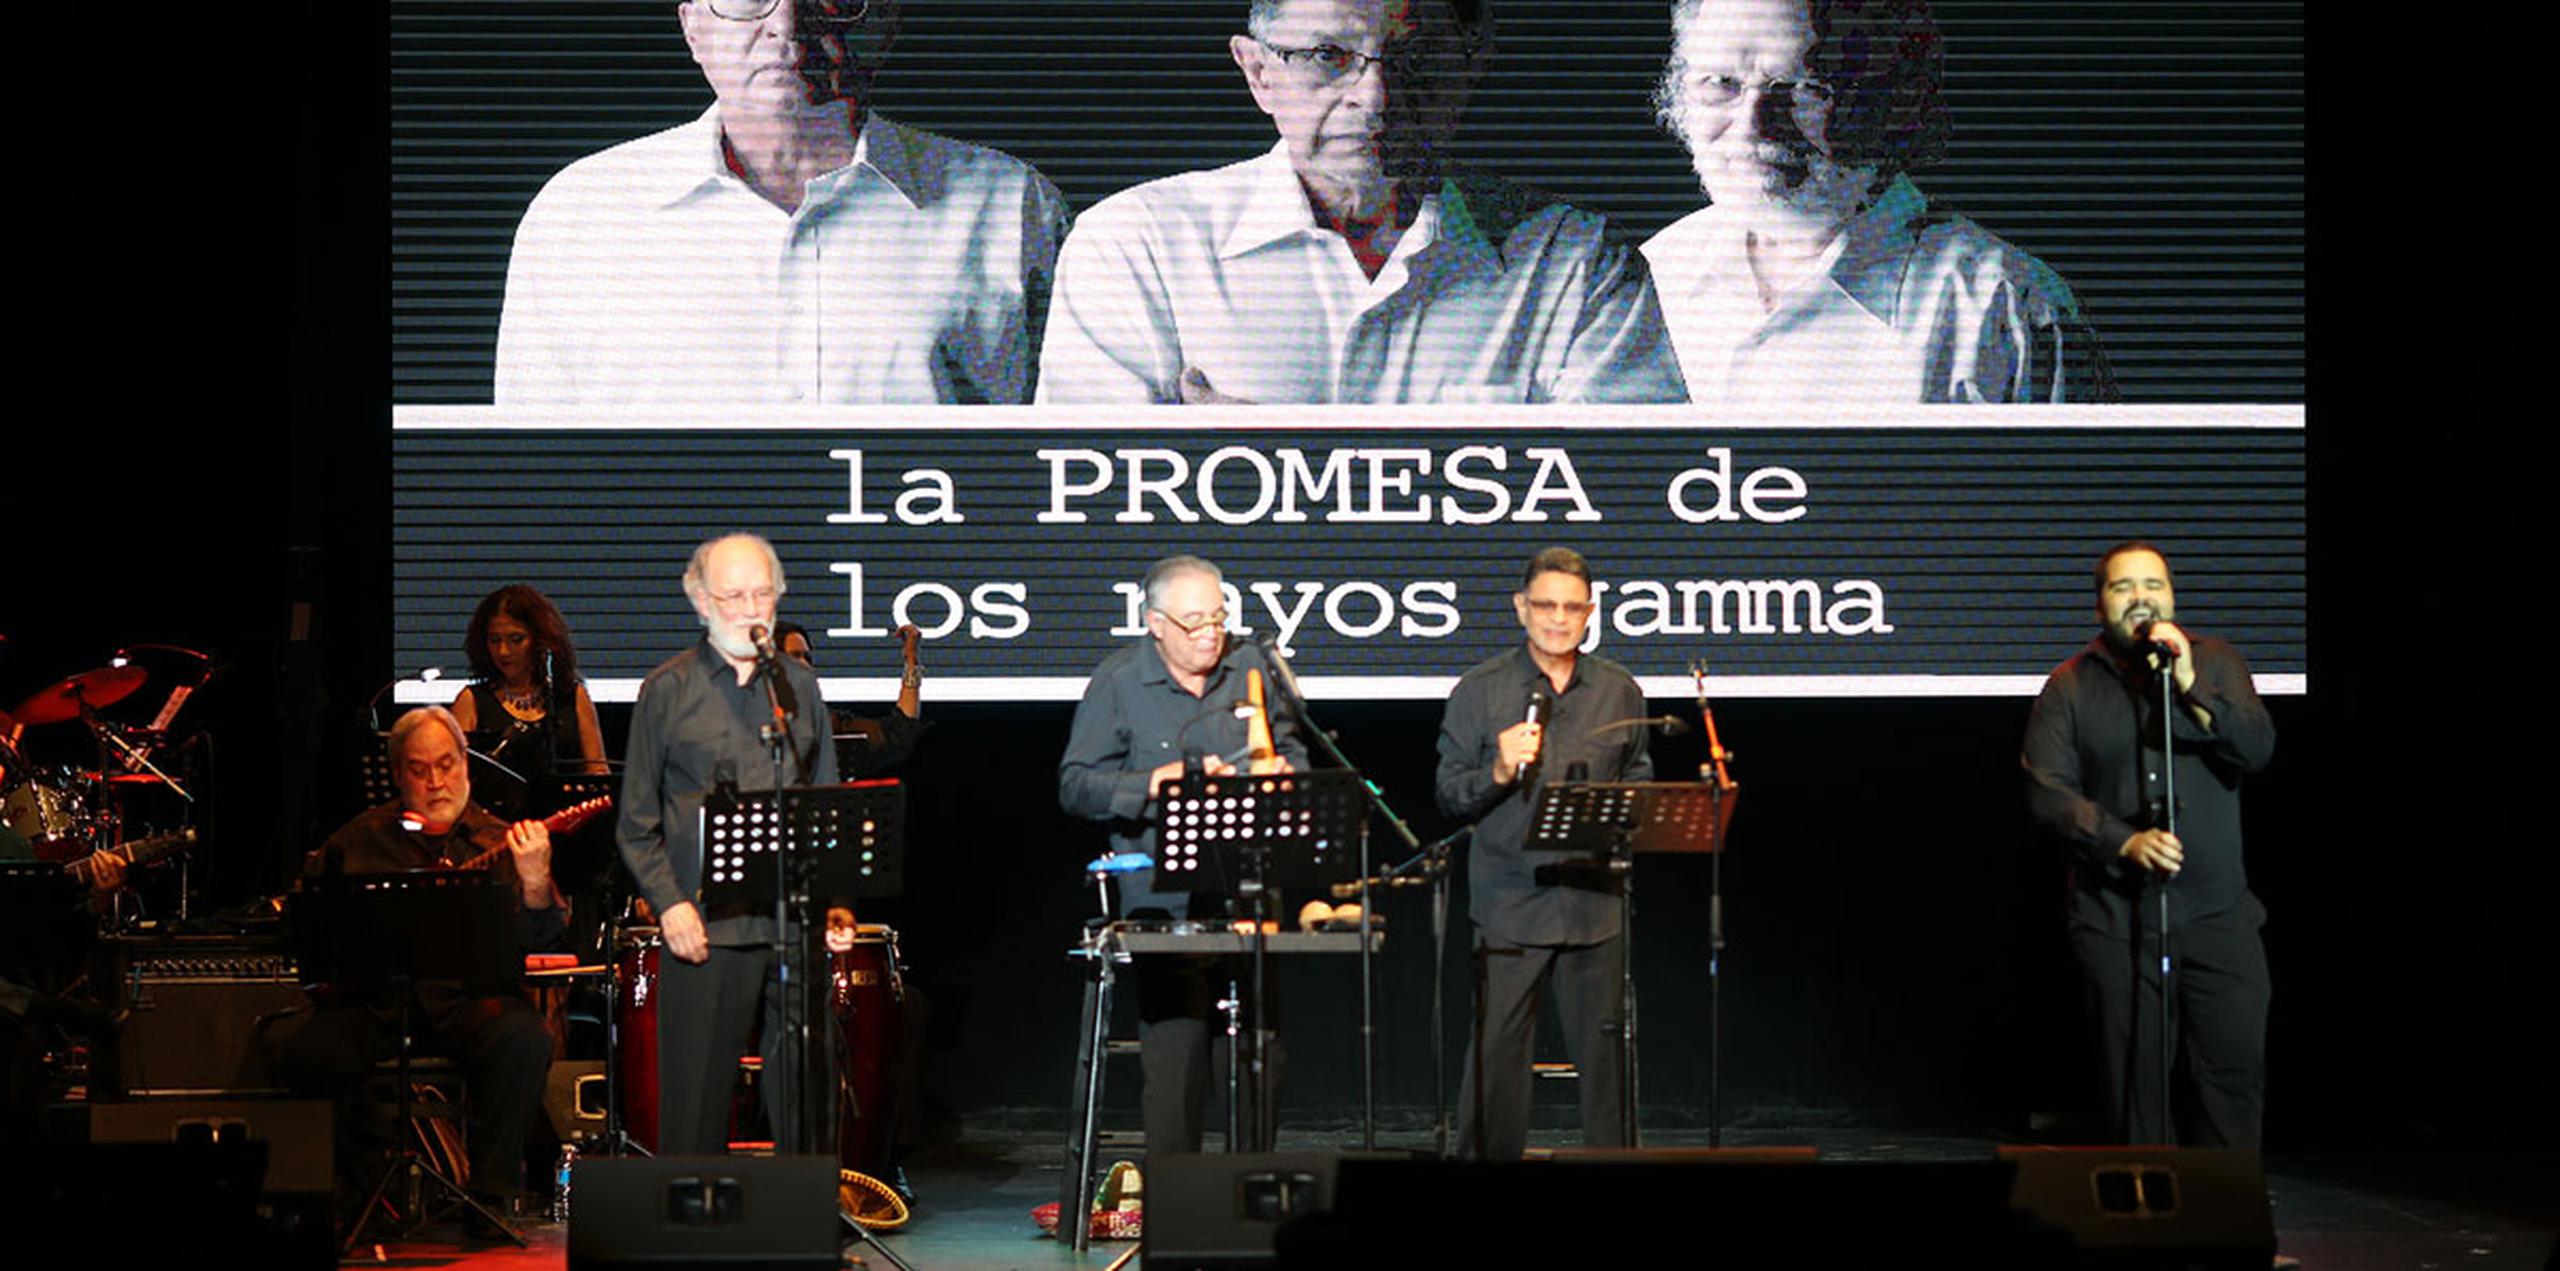 Los Rayos Gamma regresan esta noche al Teatro La Perla junto a Teatro Breve. (jose.candelaria@gfrmedia.com)